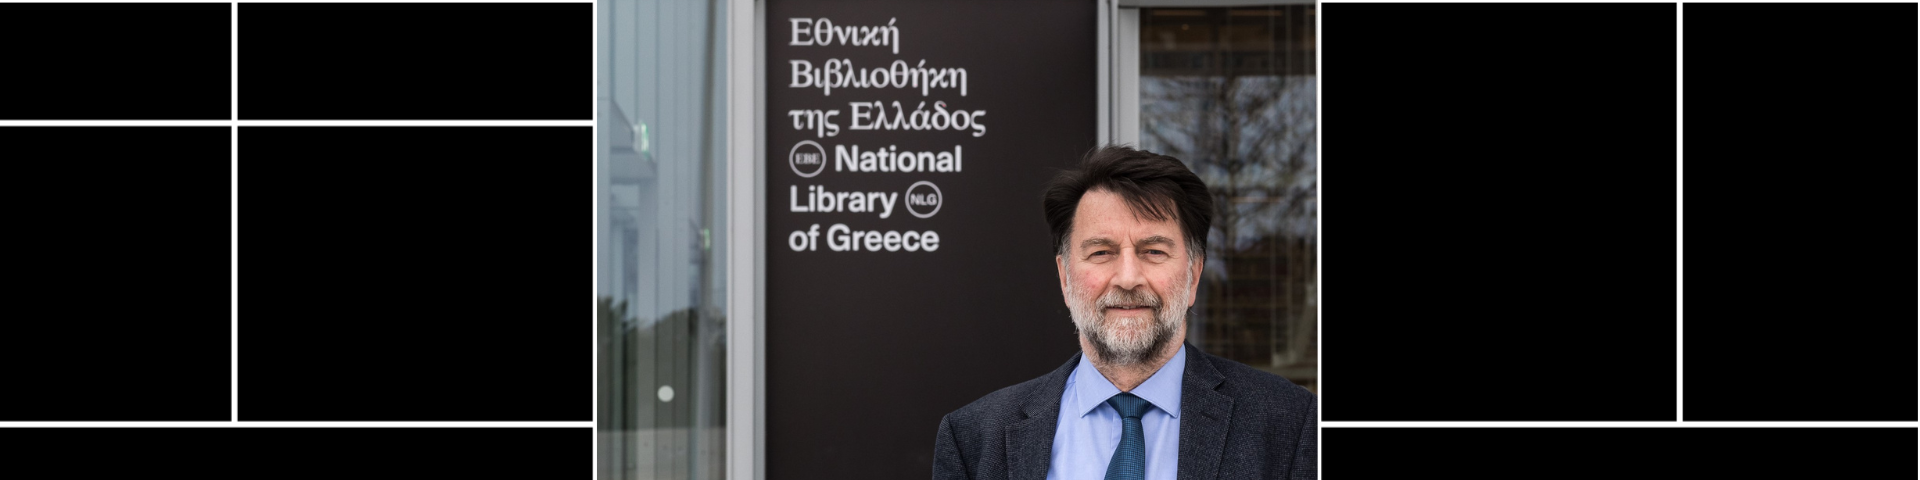 φωτογραφία  - Φίλιππος Τσιμπόγλου, Γενικός Διευθυντής της Εθνικής Βιβλιοθήκης της Ελλάδος